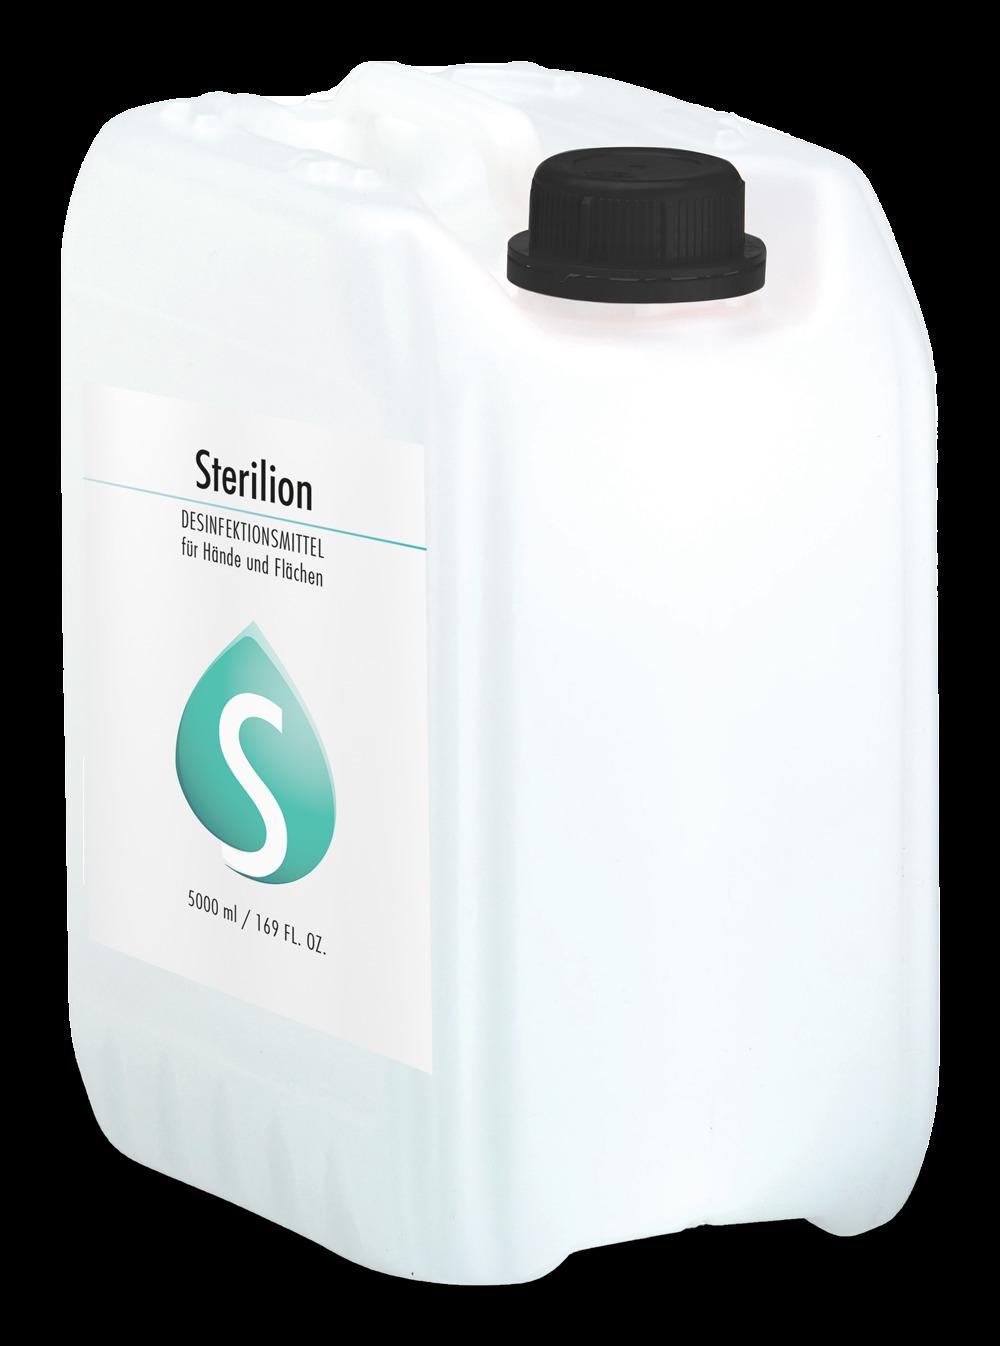 DESINFEKTIONSMITTEL Sterilion für Hände (auch für Flächen geeignet), 5000 ml